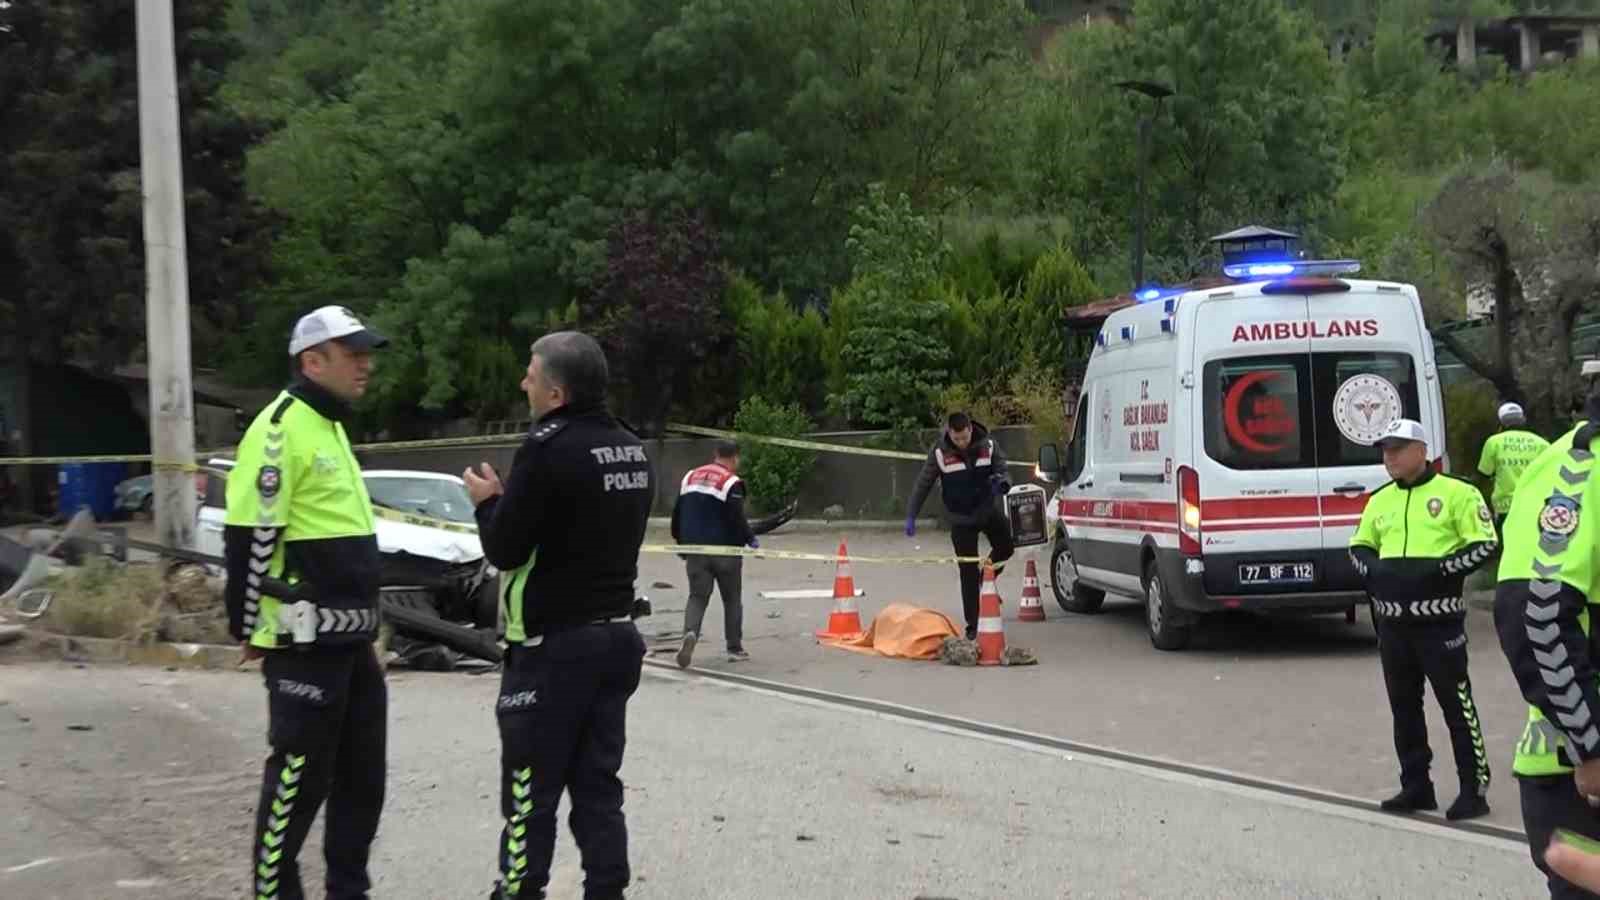 Yalova’da trafik kazası: 1 ölü, 7 yaralı
